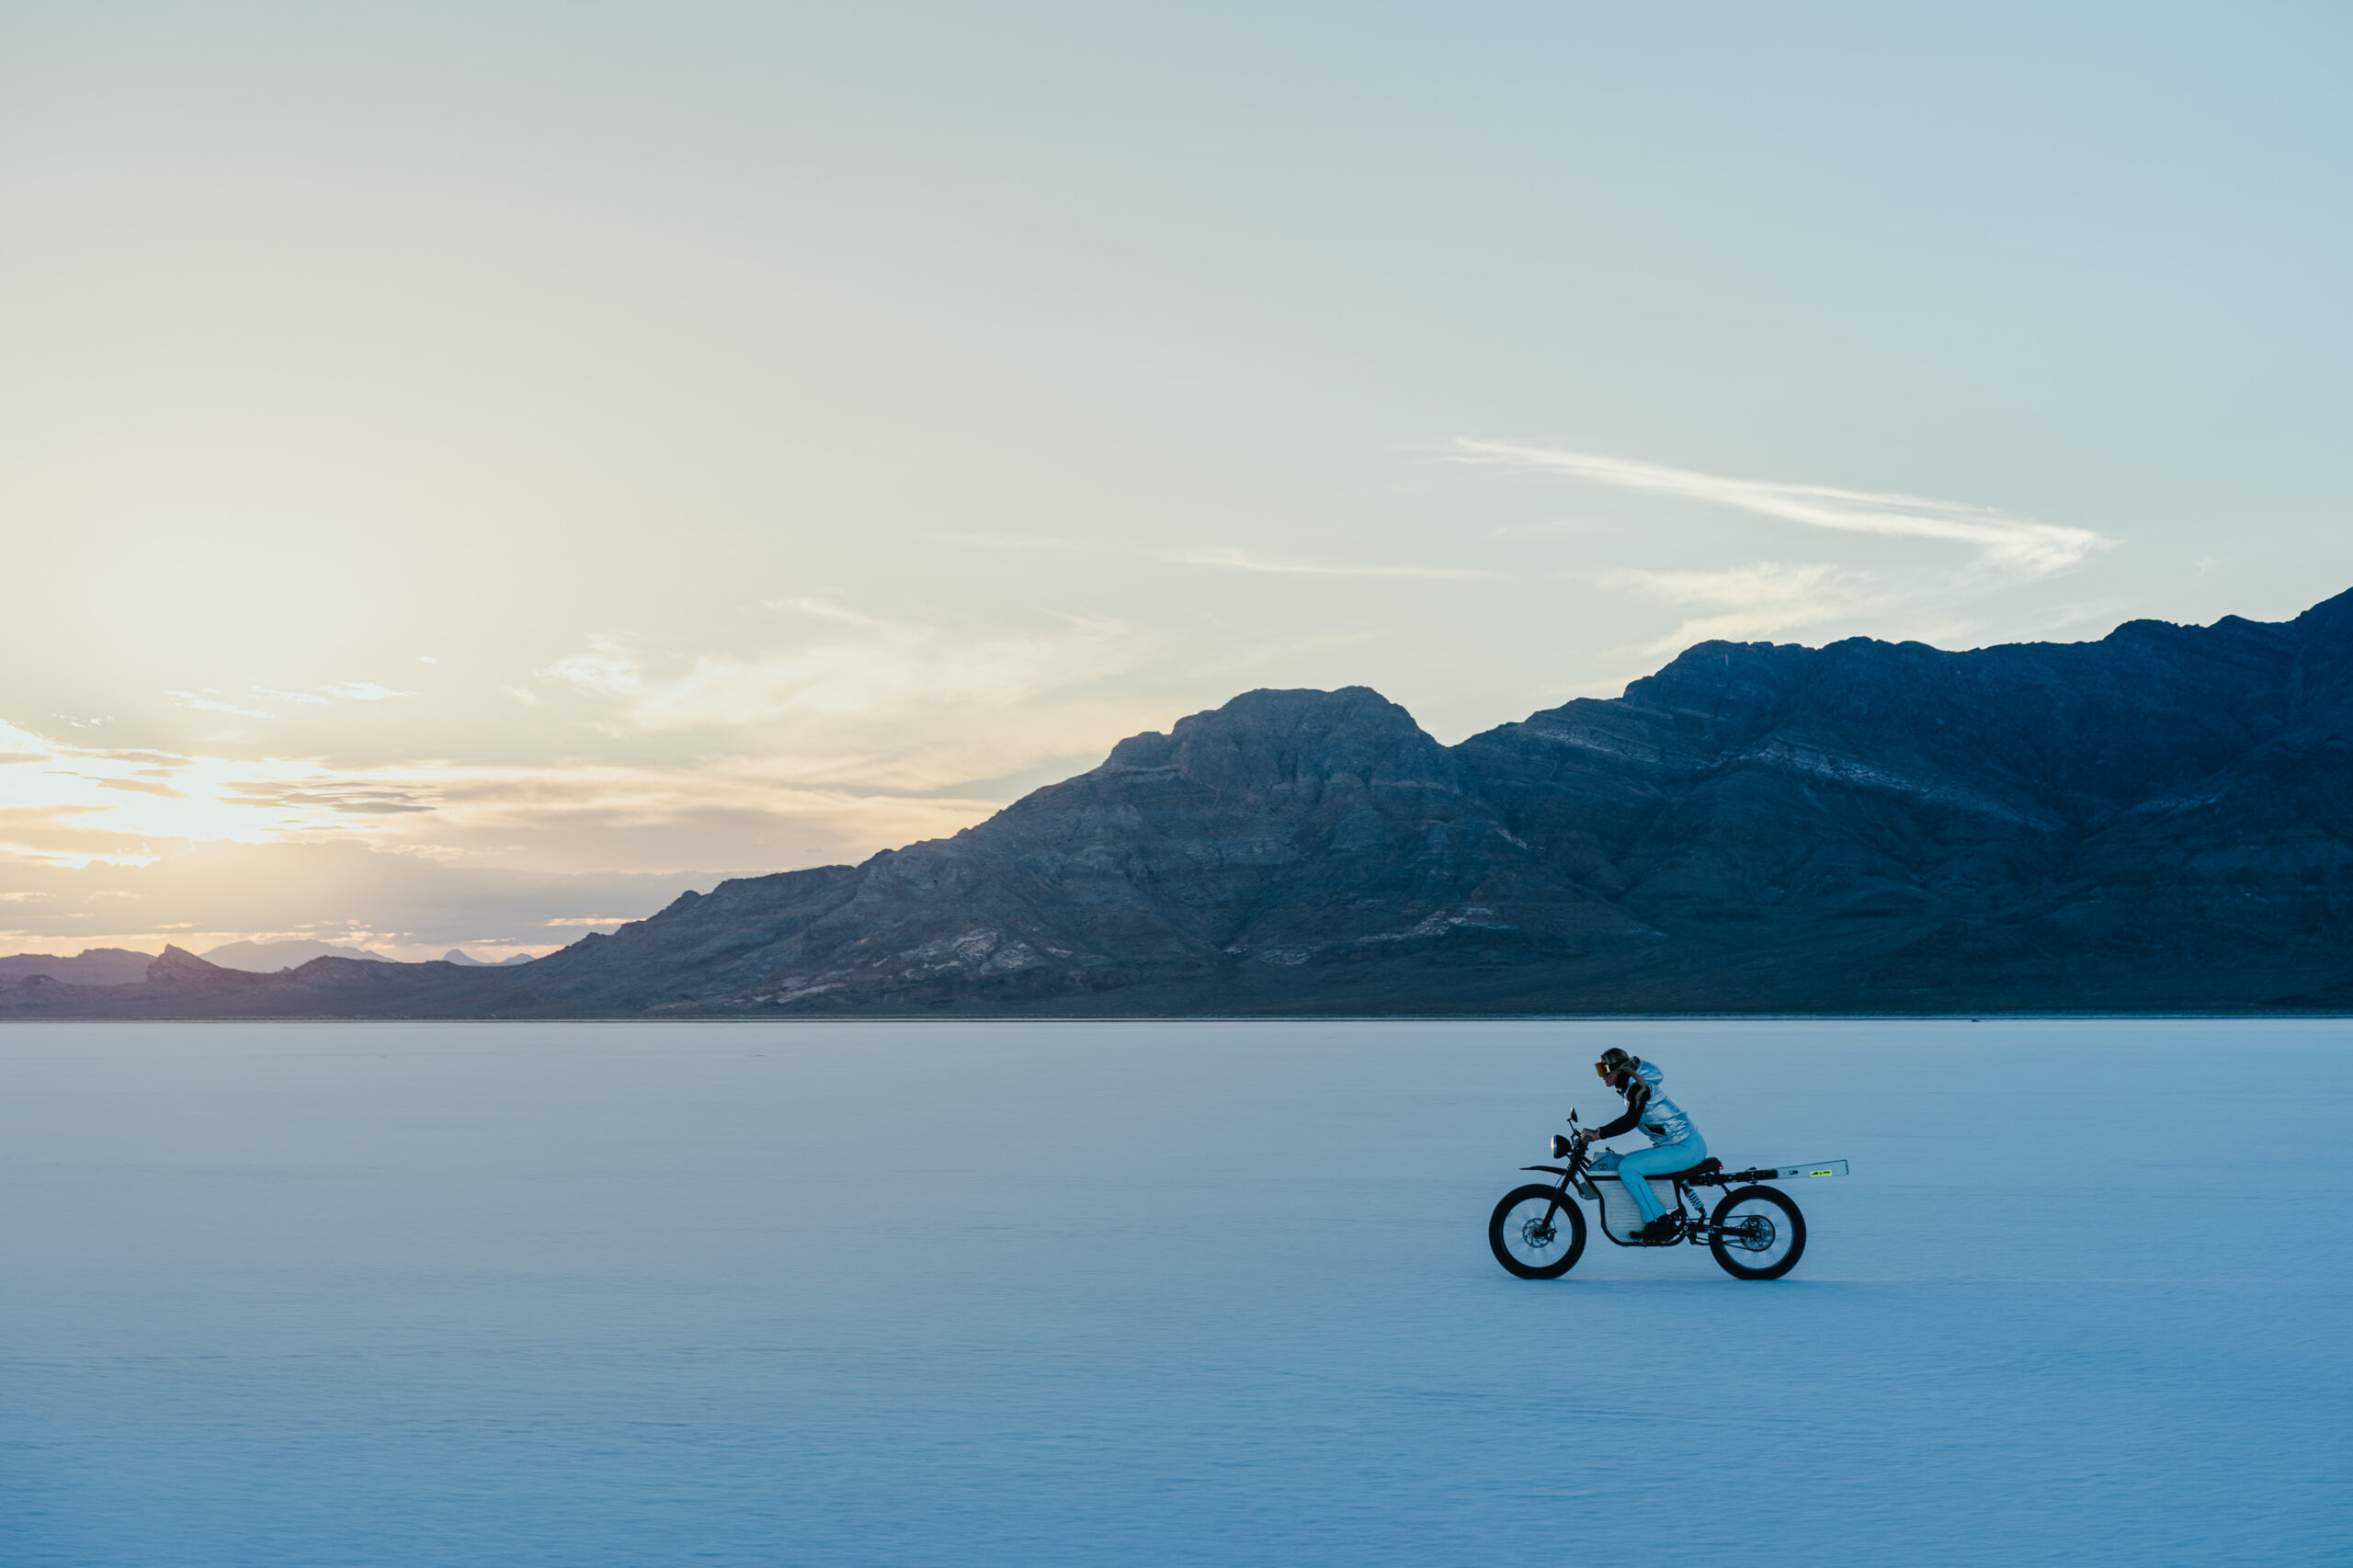 Lindsey Vonn riding a Terra Bike across the Bonneville Salt Flats at sunset.